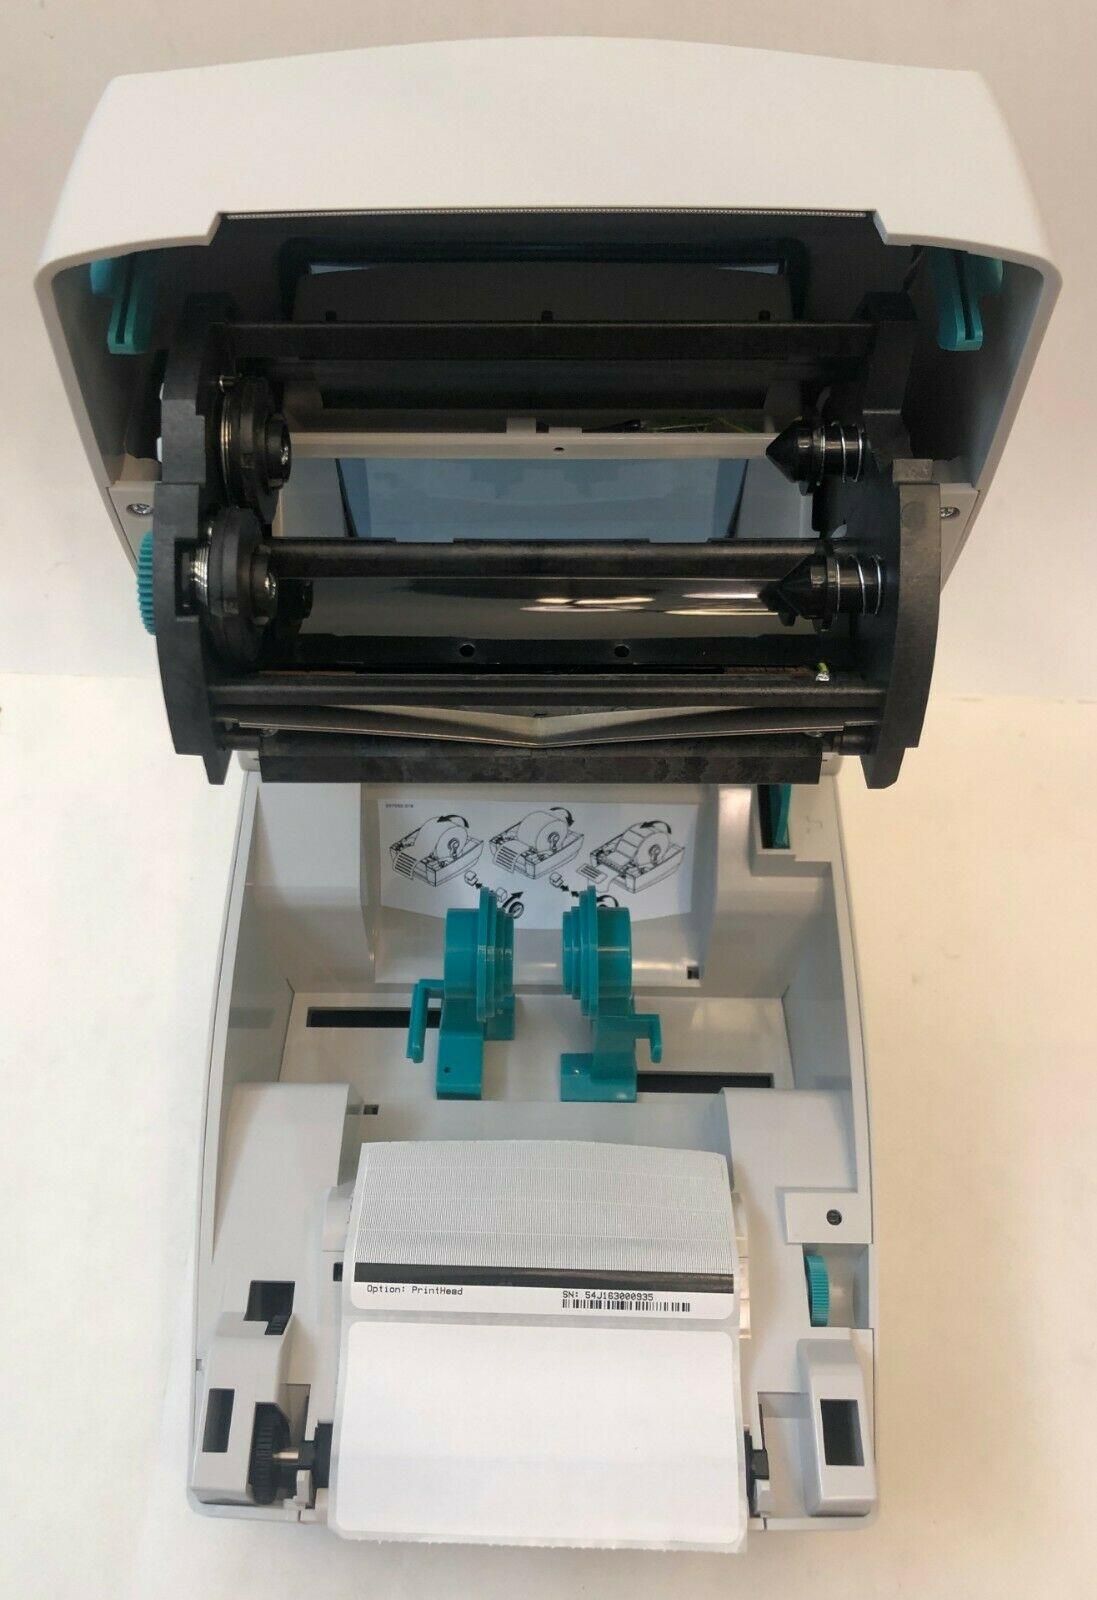 Термотрансферный принтер Zebra GC420t. Работает в связке с Новая Почта